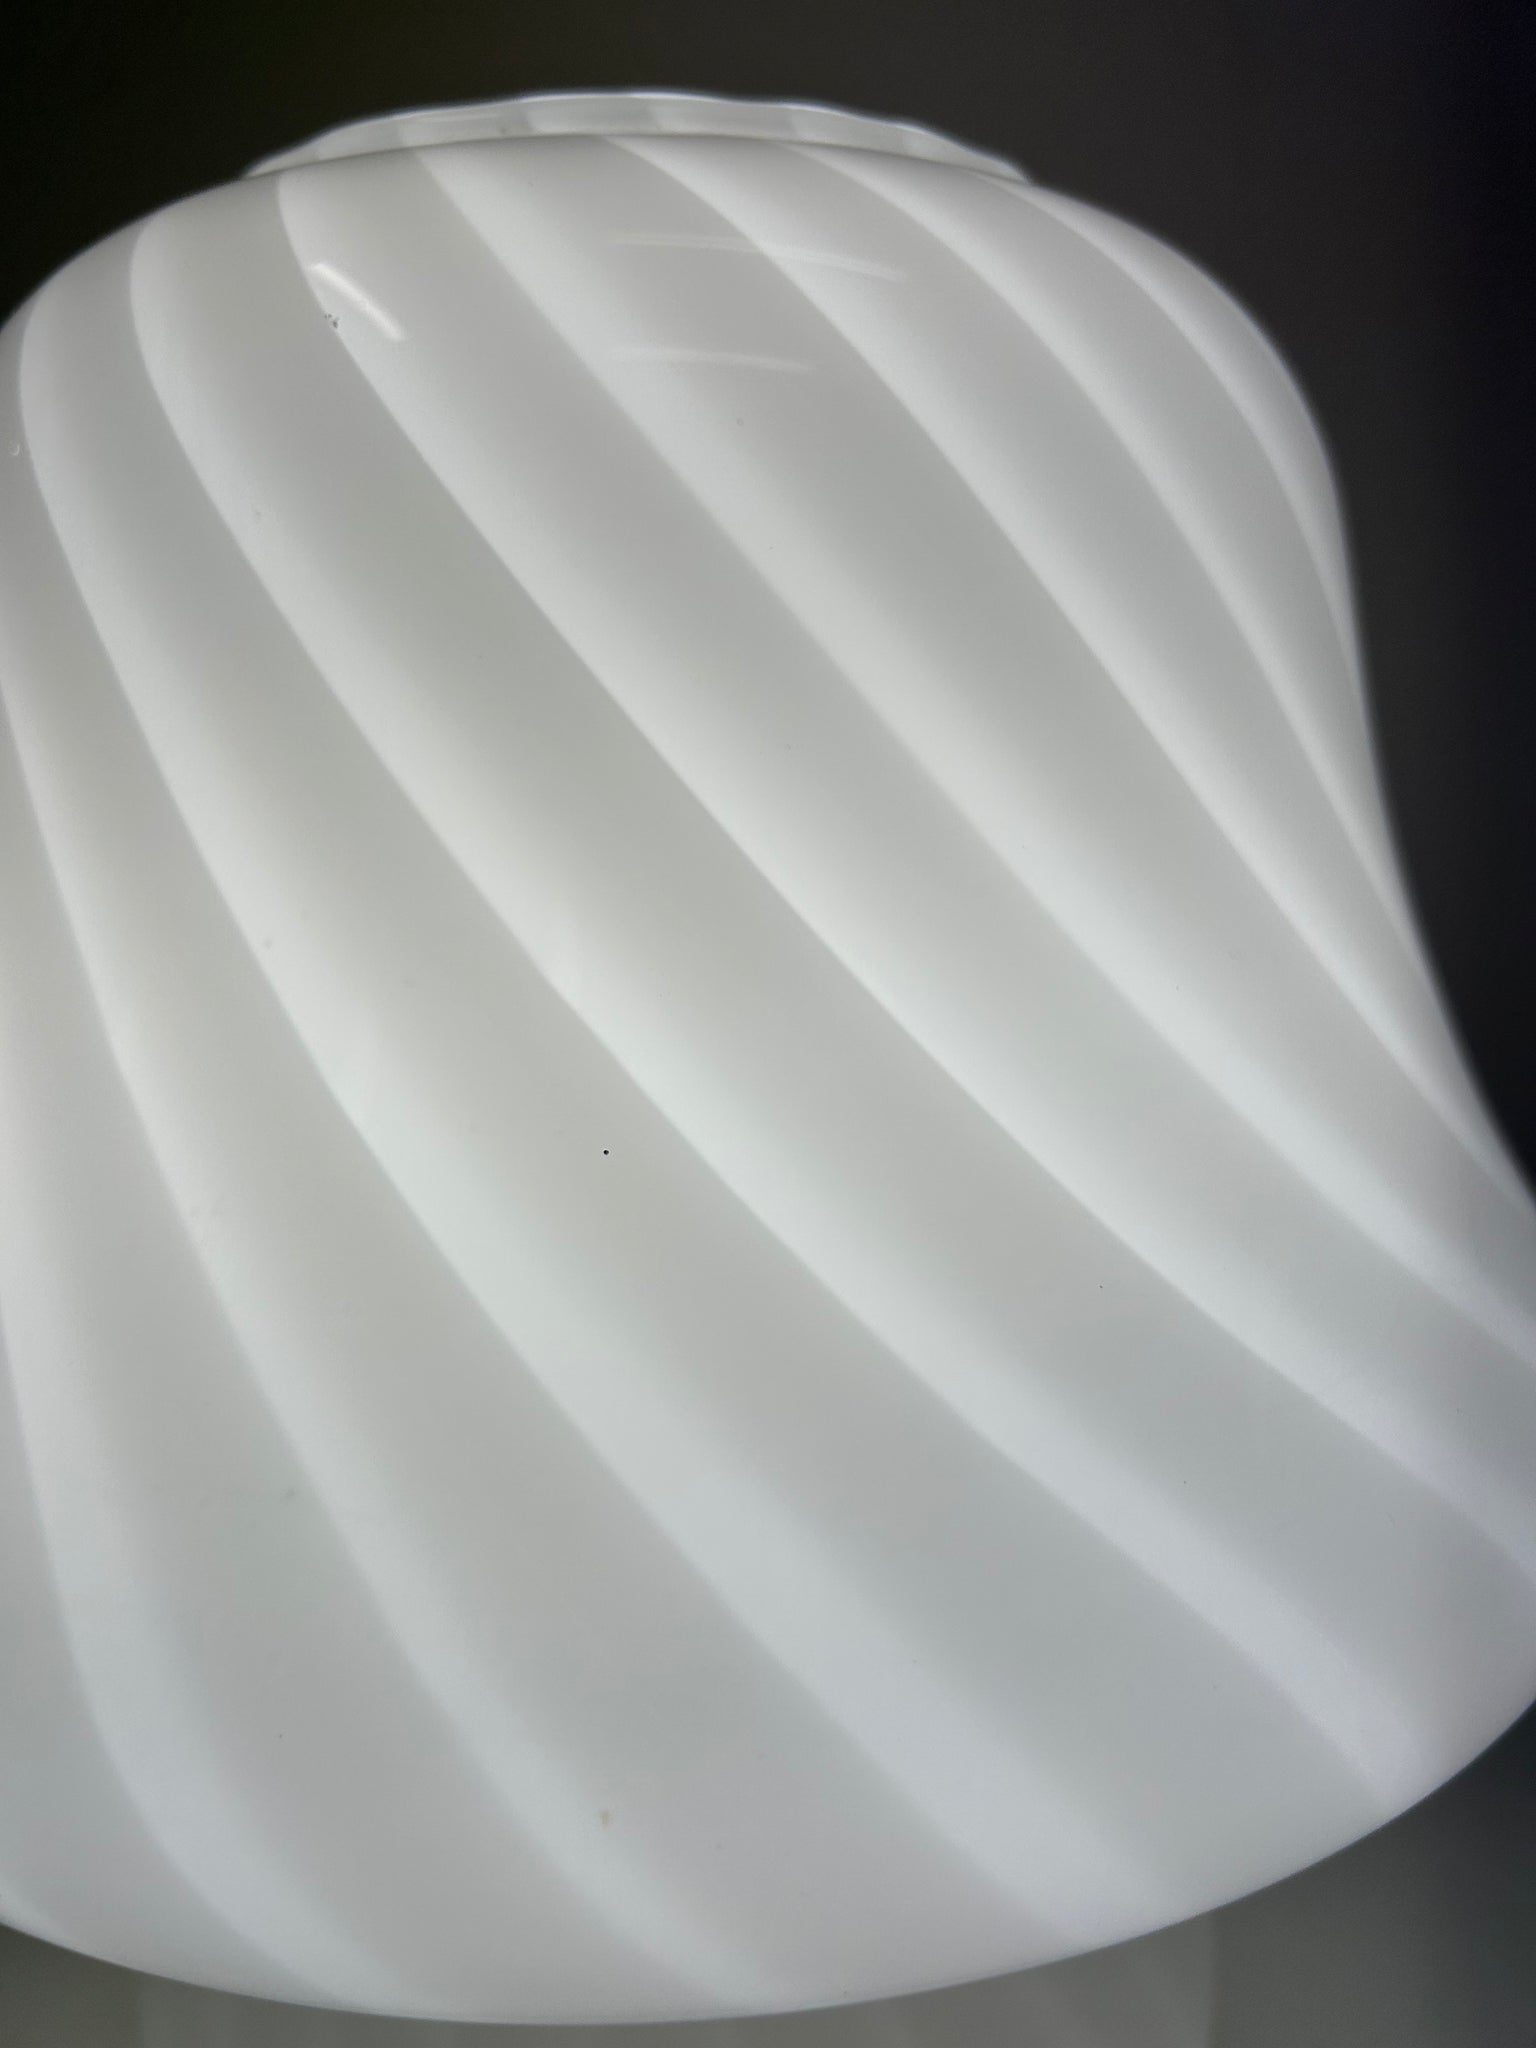 Small white swirl Murano mushroom lamp